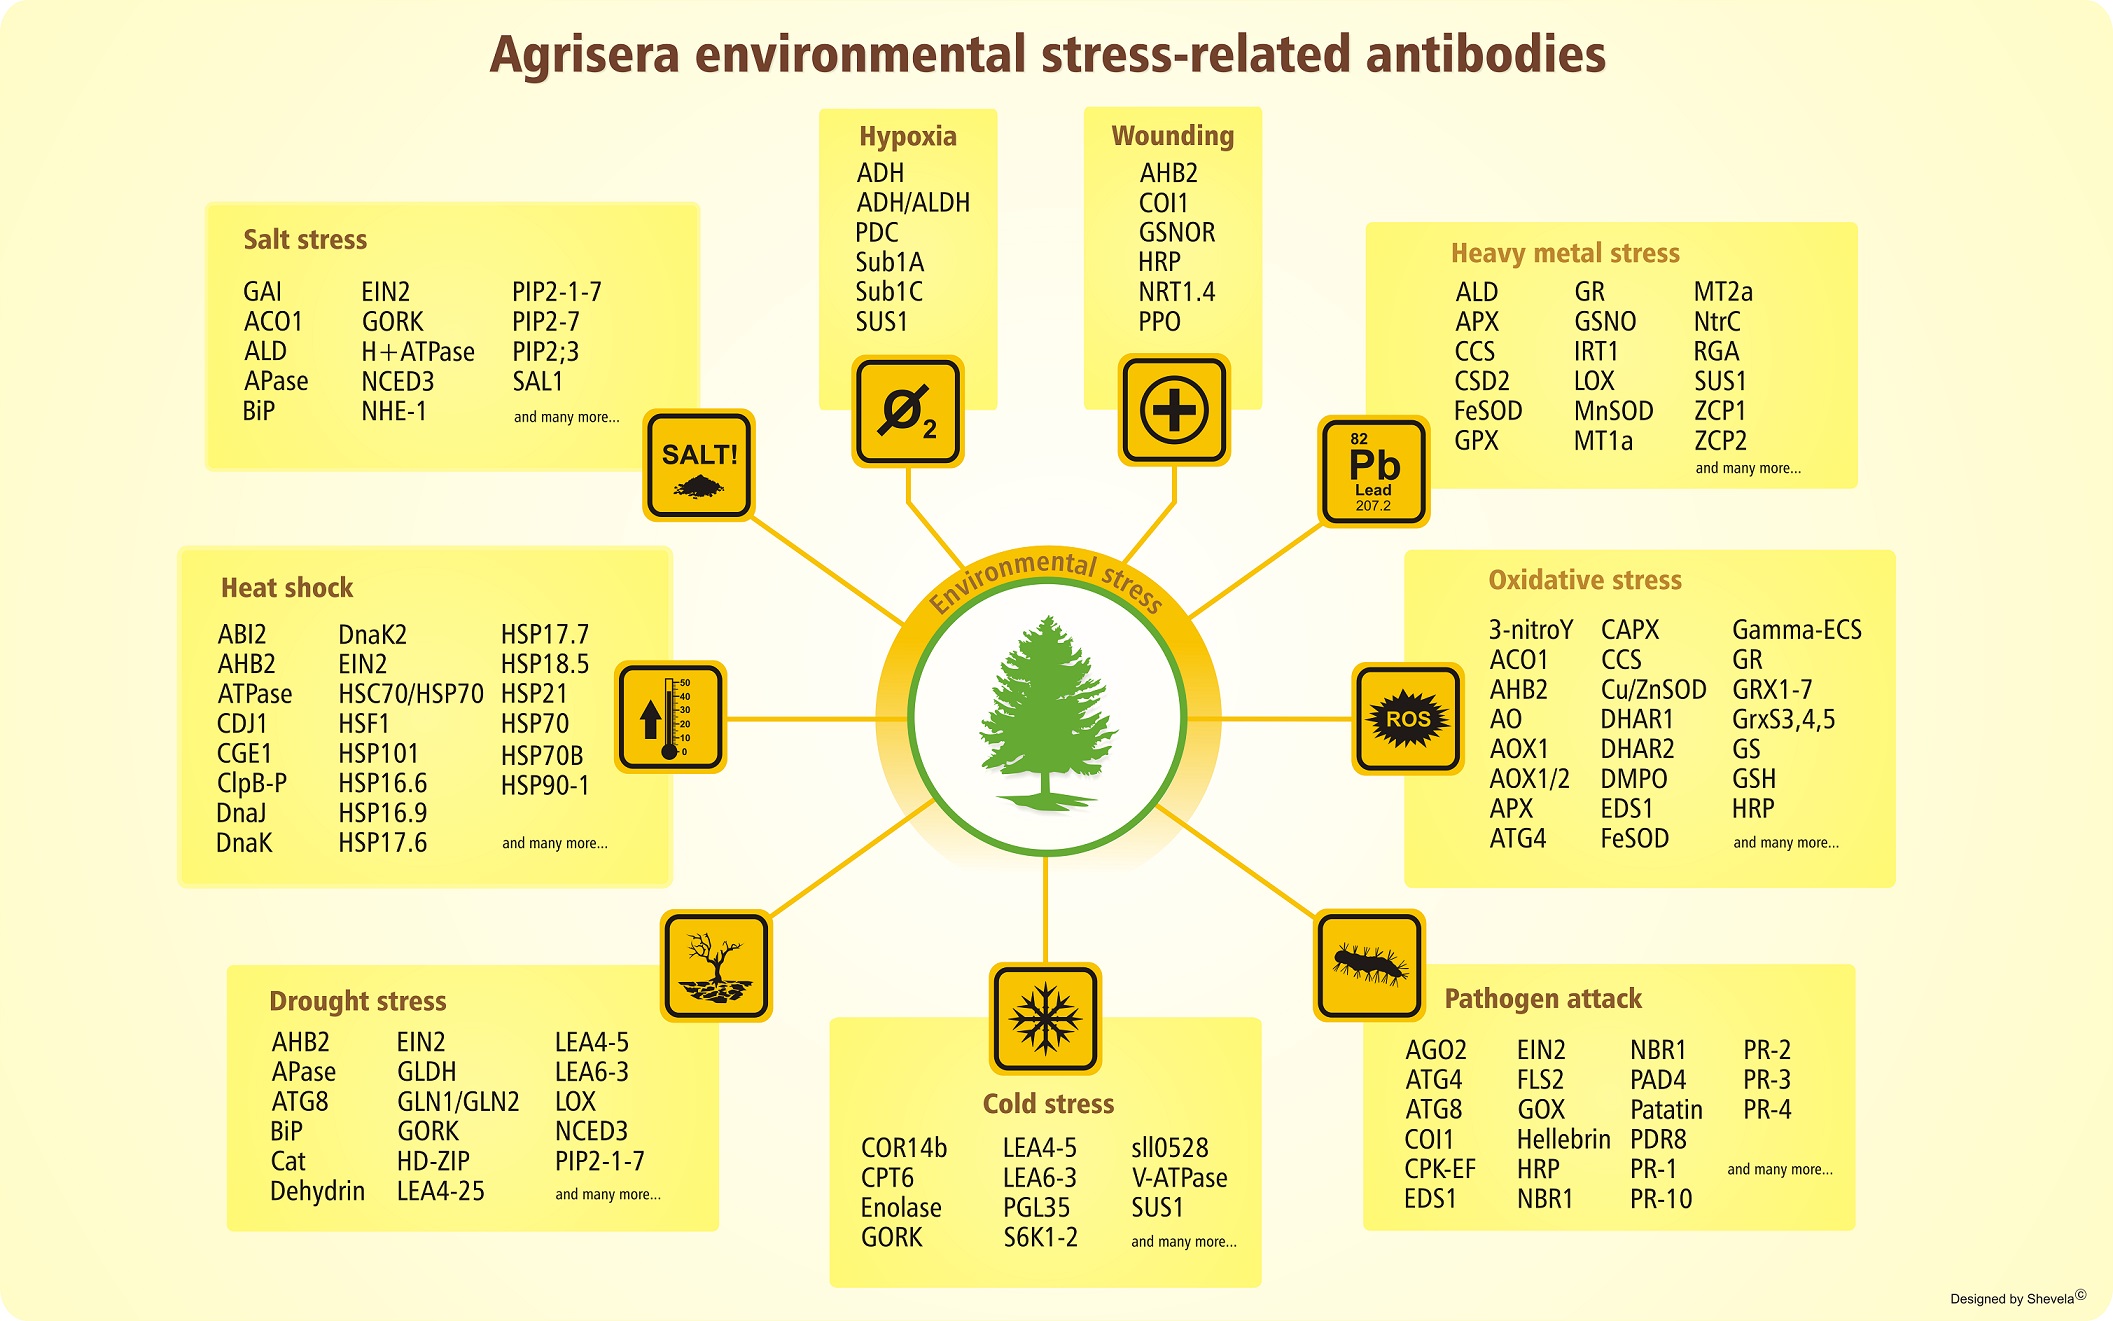 Agrisera社環境ストレス関連抗体ラインナップ